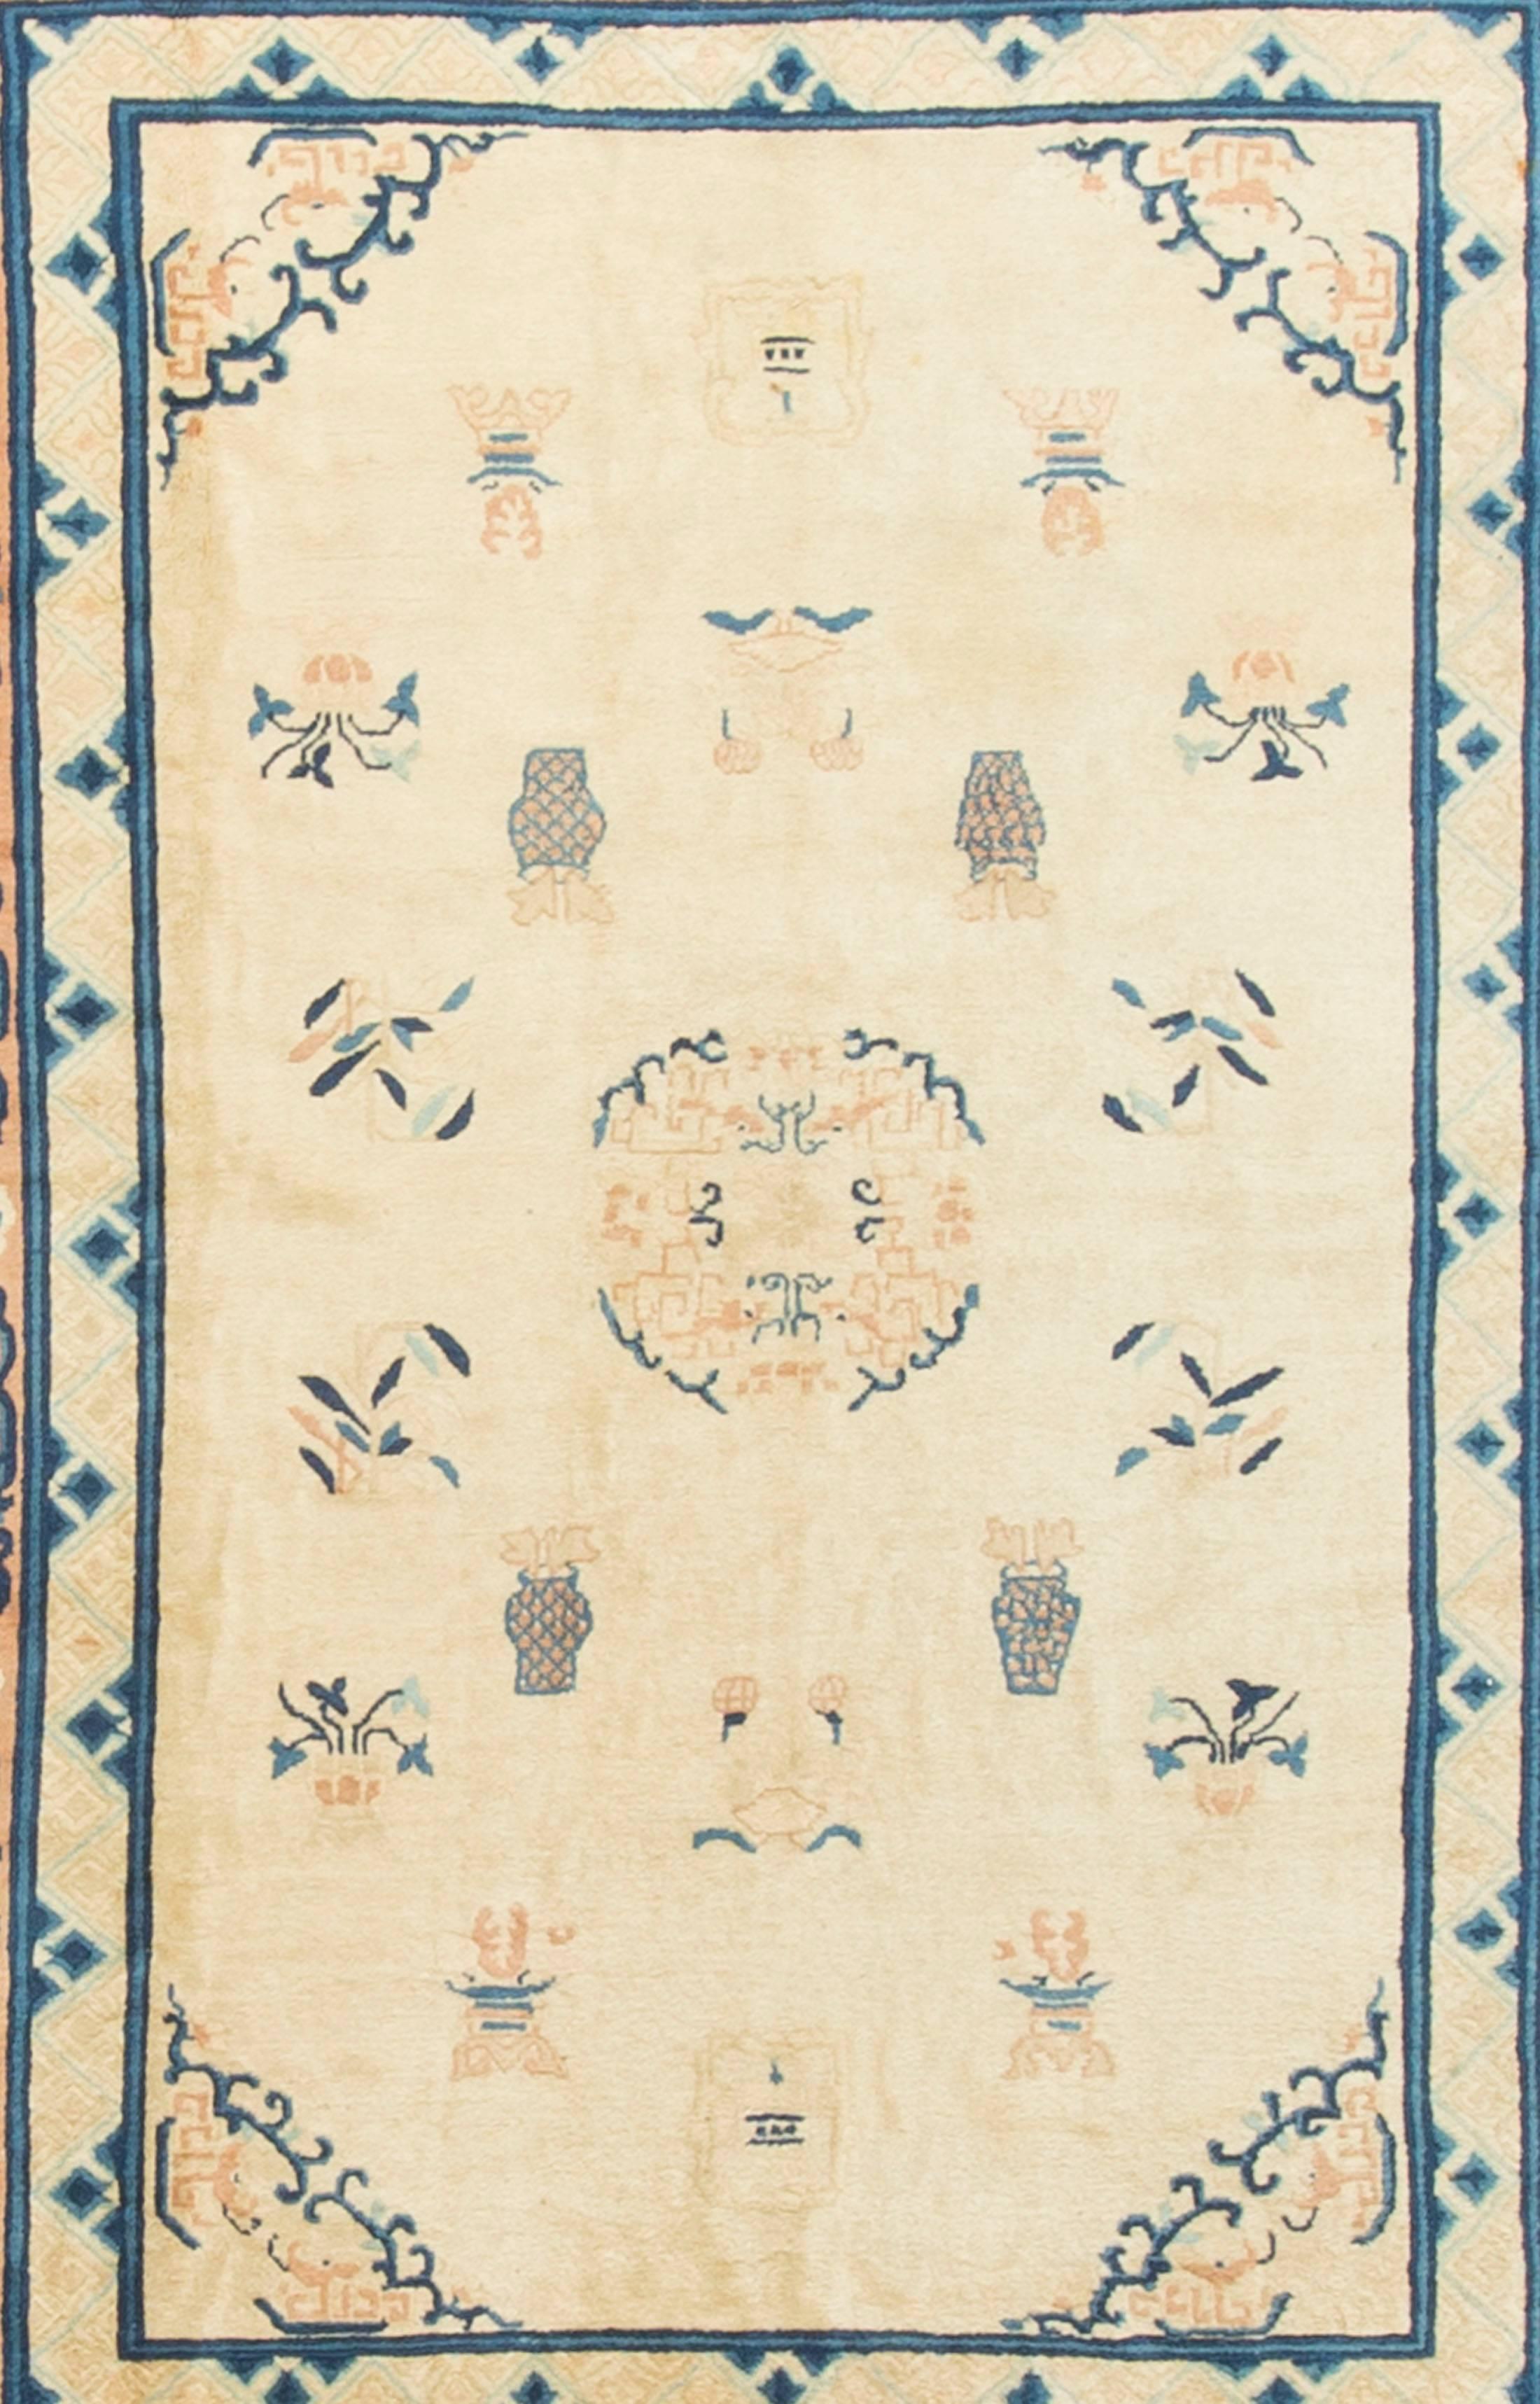 Tapis chinois antique de Pékin Circa 1900. Le tissage à Pékin a commencé vers 1900, lors de la renaissance de la fabrication de tapis chinois, lorsque les autres régions de tissage, comme le Ningxia, se sont déplacées vers la capitale. Les tapis